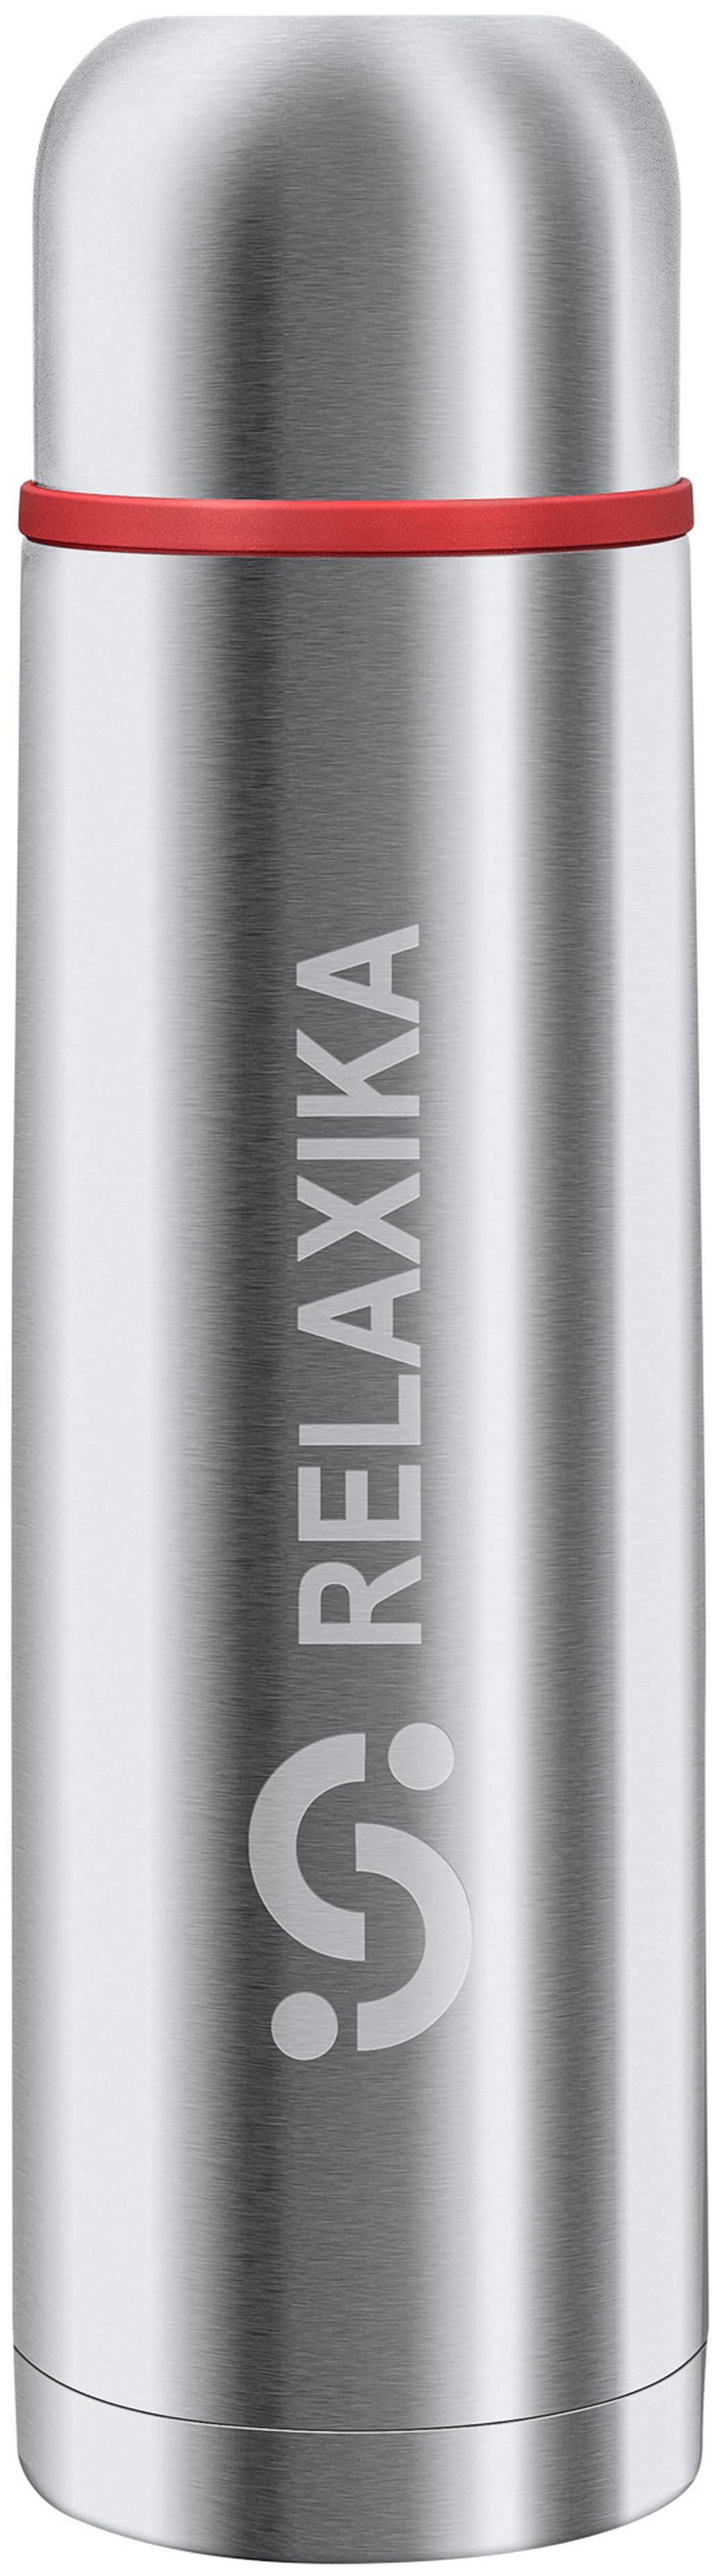 Термос Relaxika 101 (0,5 литра), стальной, шт R101.500.1 фото